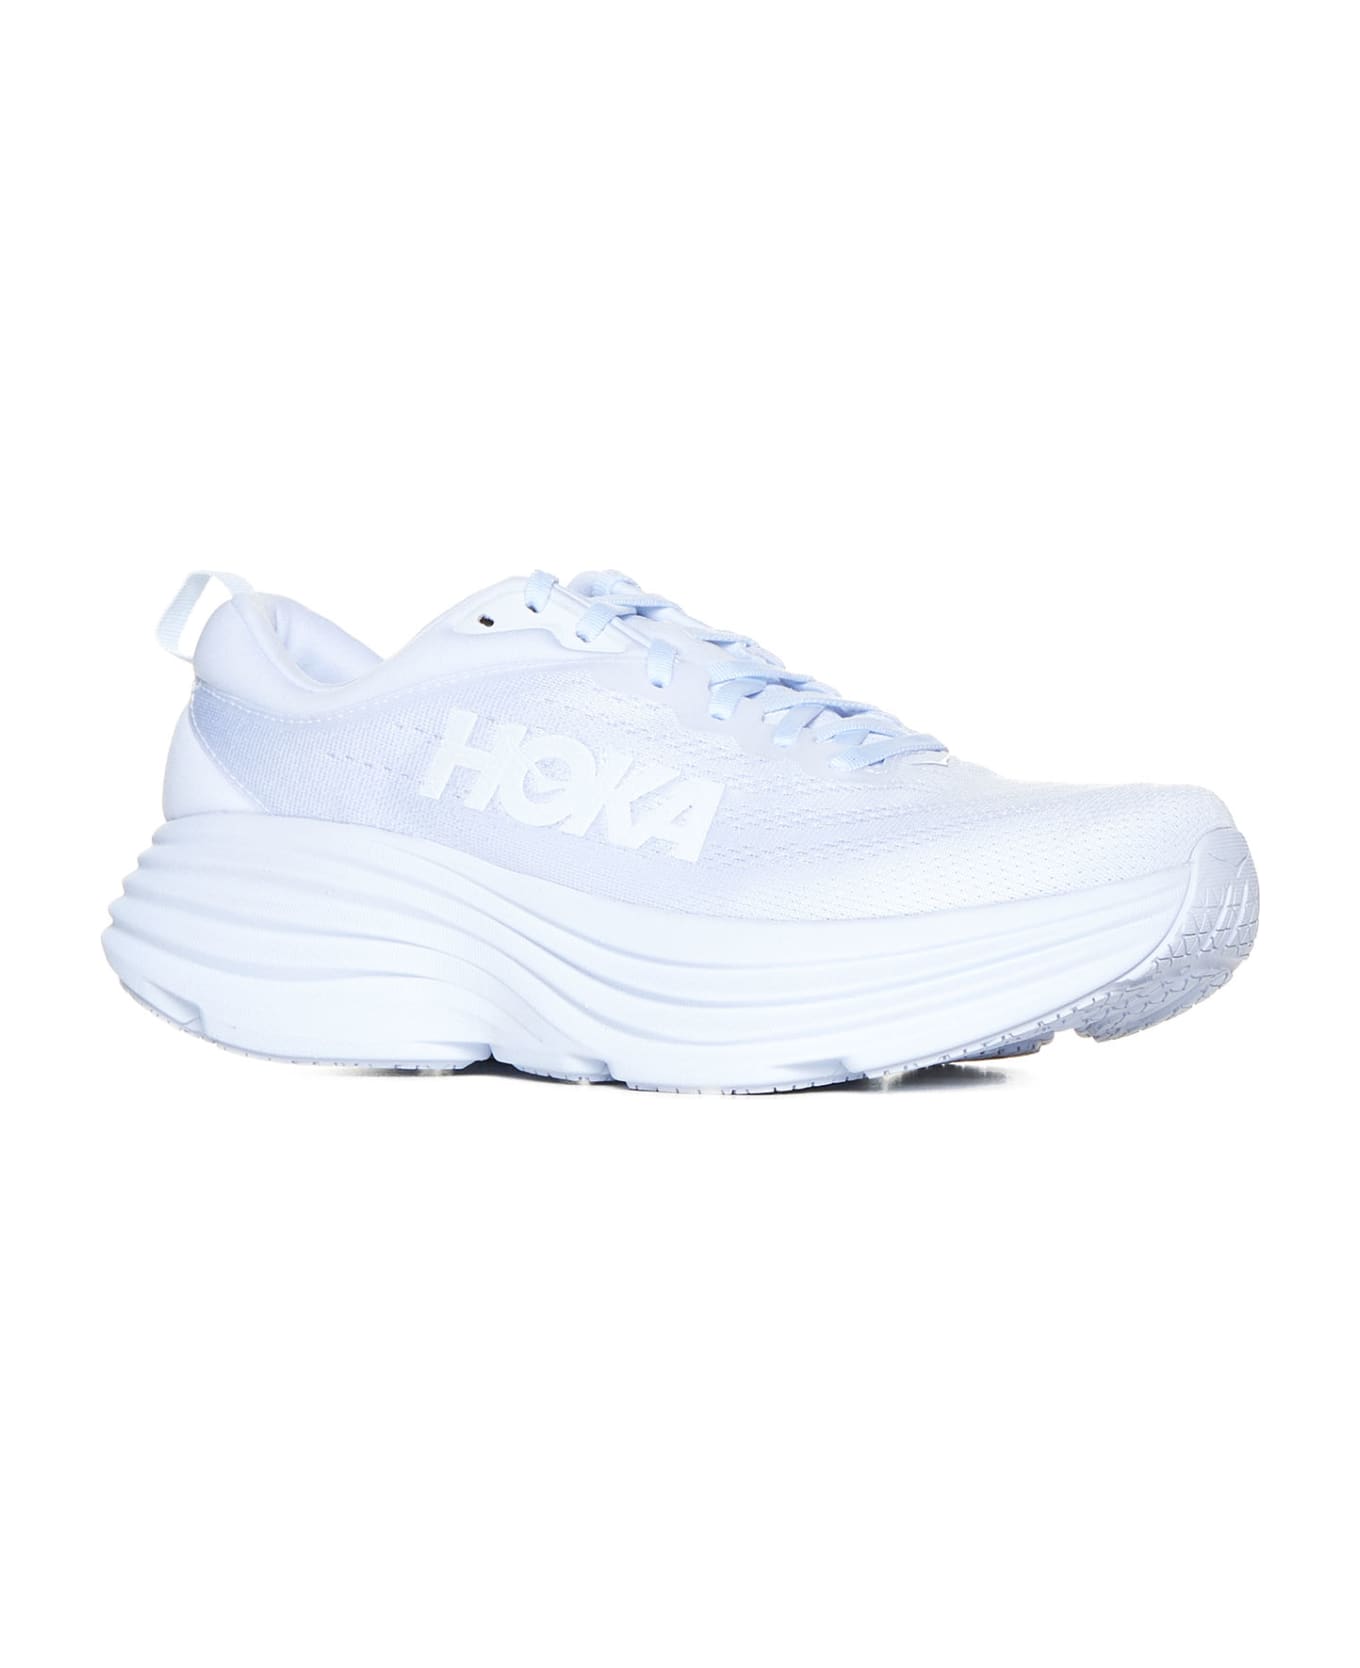 Hoka Sneakers - White white スニーカー